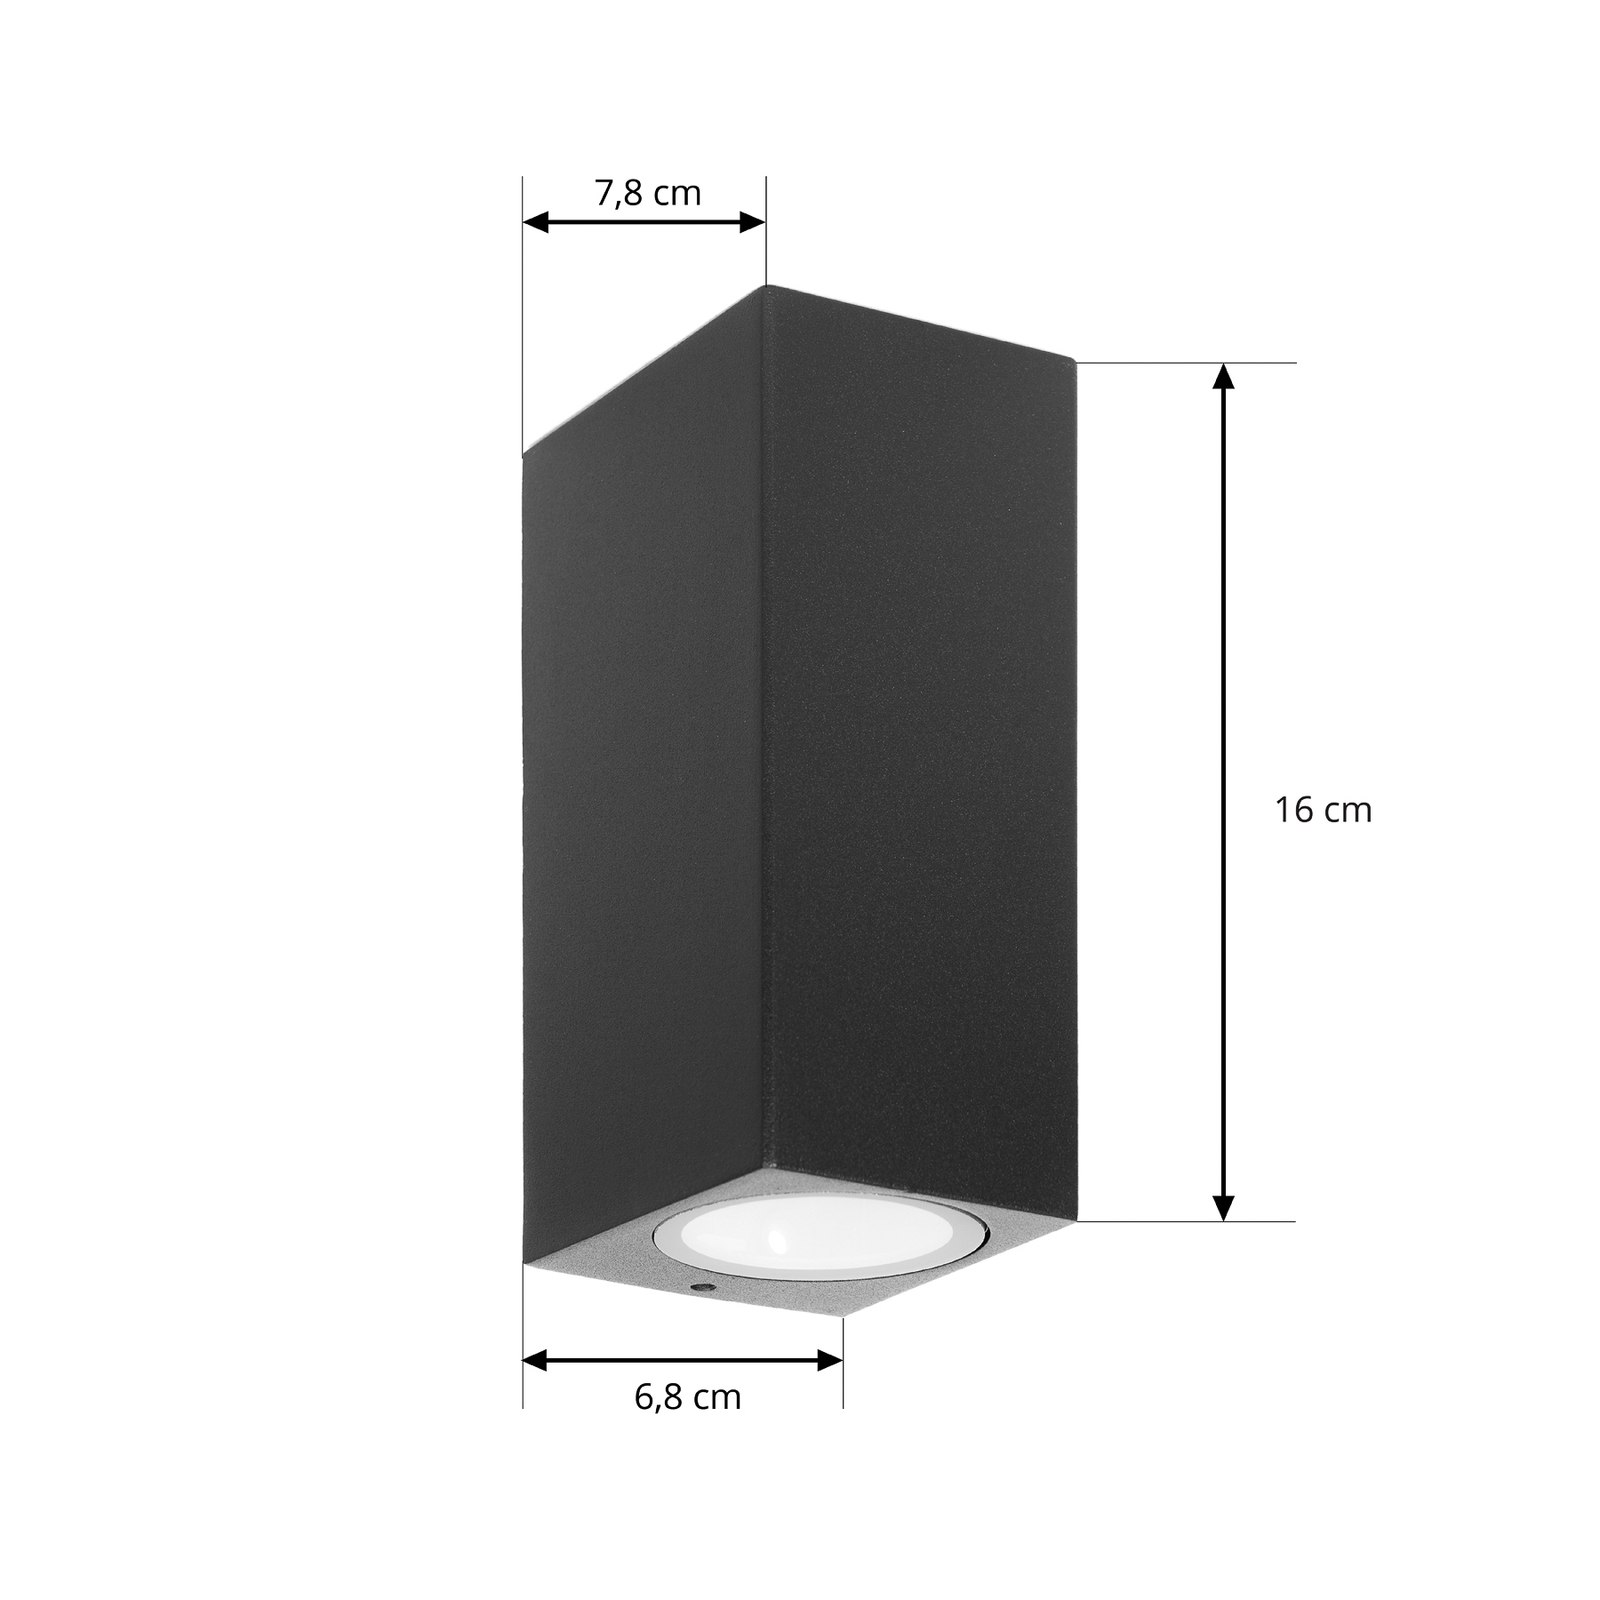 Prios buitenwandlamp Tetje, zwart, hoekig, 16 cm, set van 4